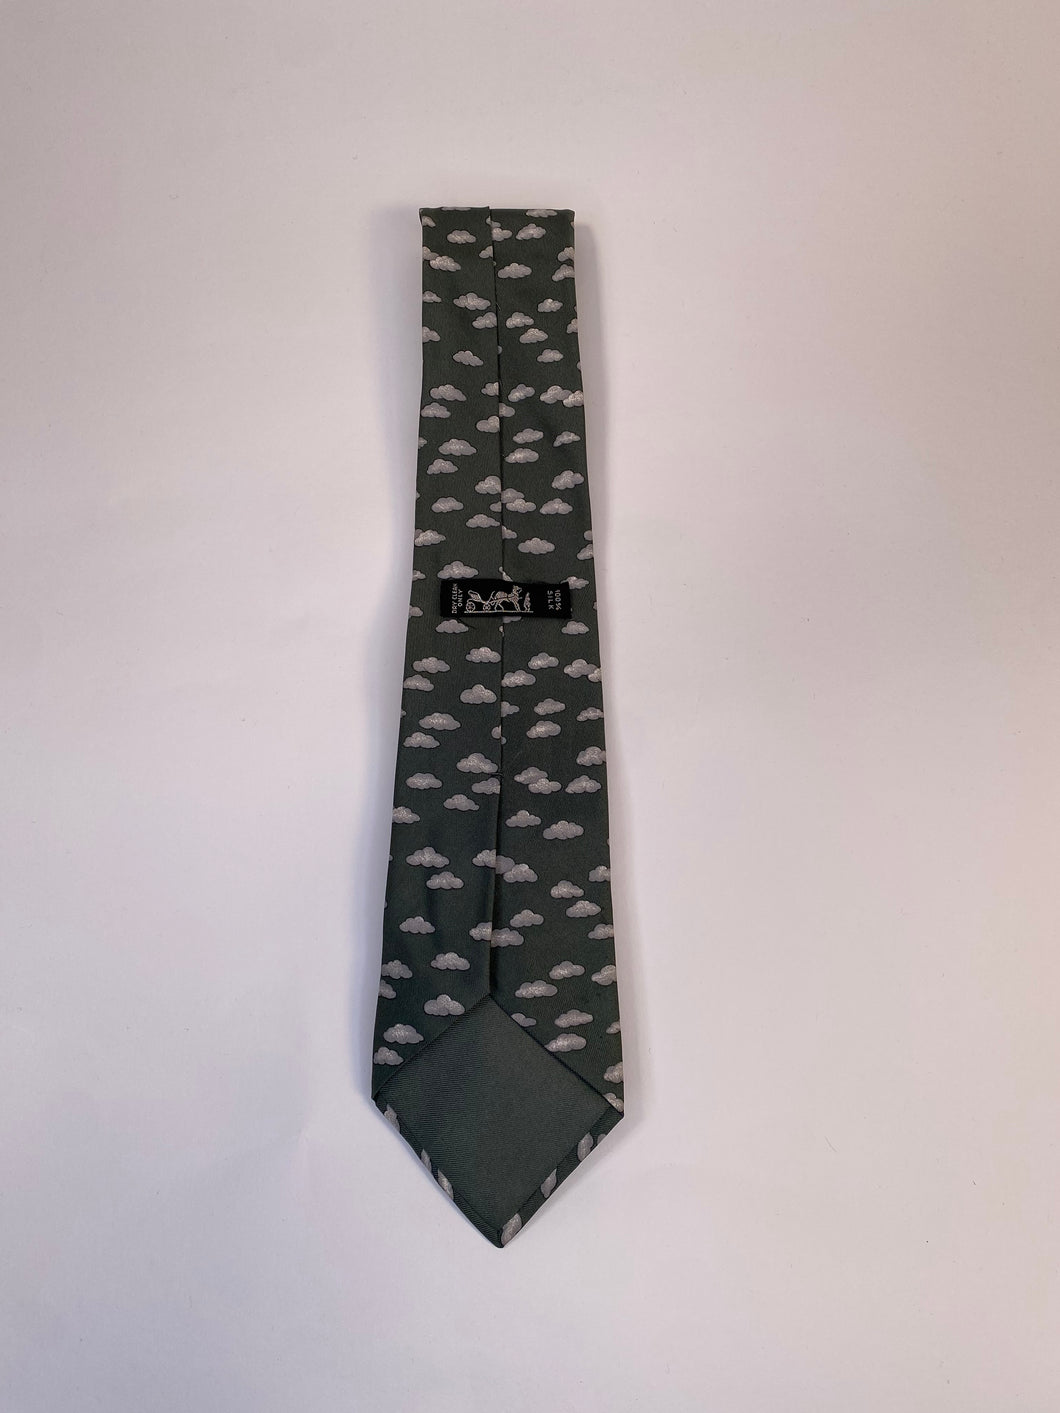 1990s Hermes necktie gray / clouds